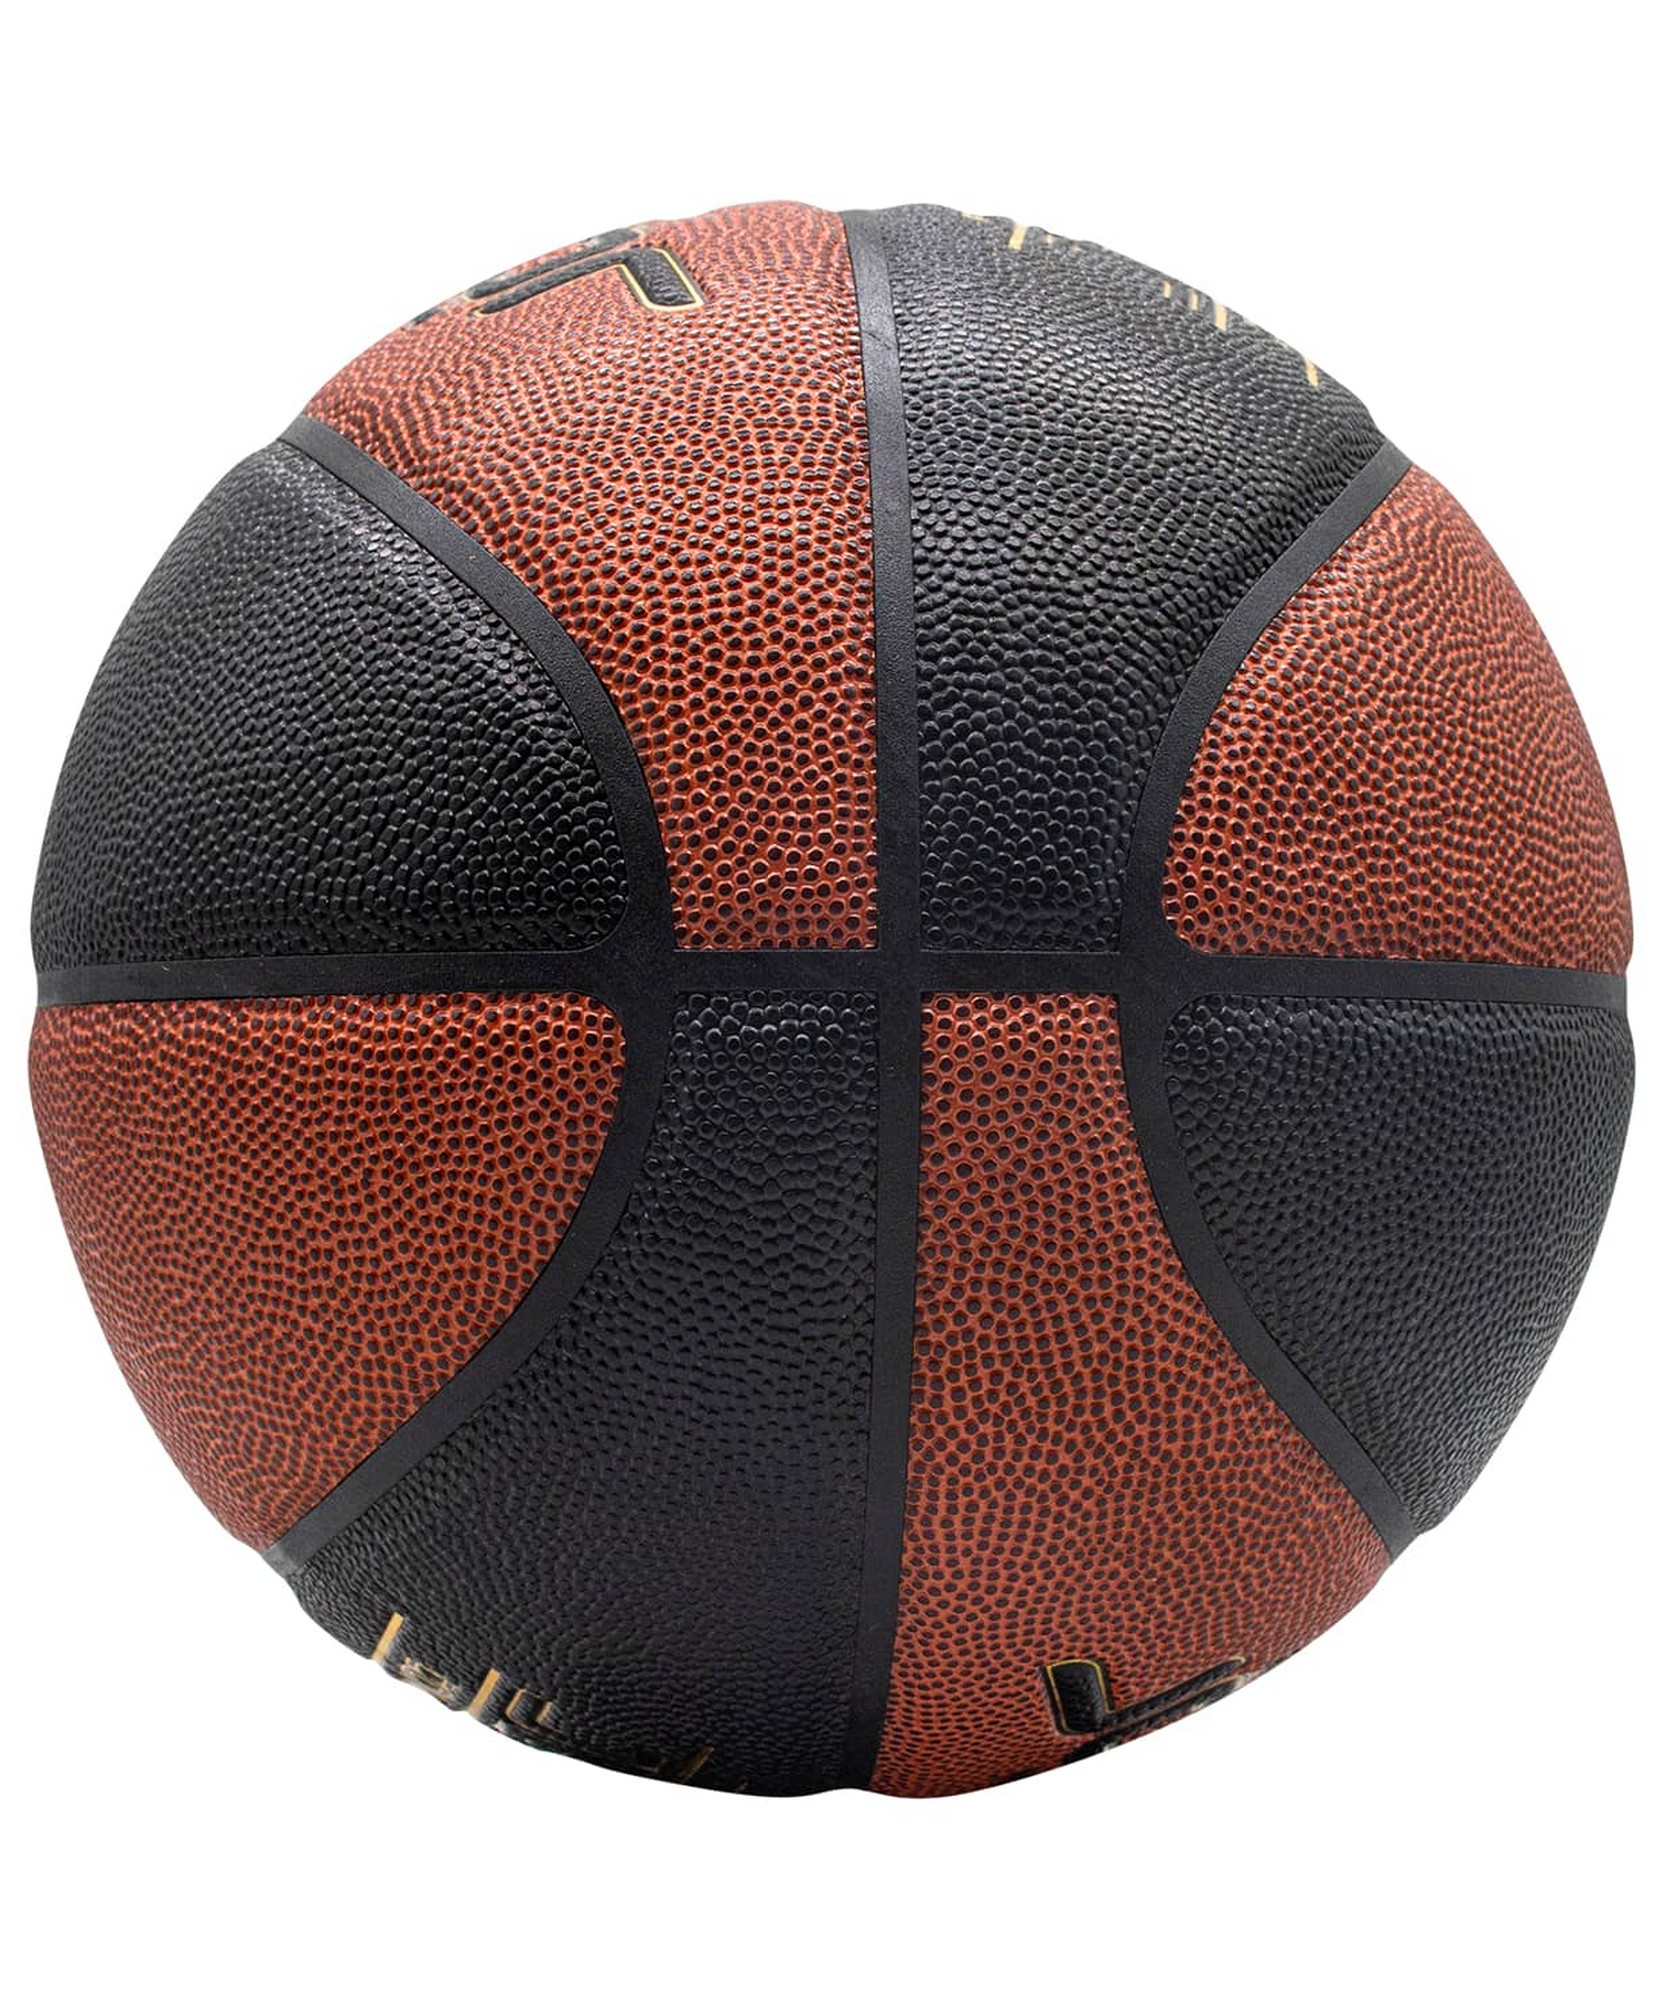 Мяч баскетбольный Jogel JB-900 p.7 1663_2000